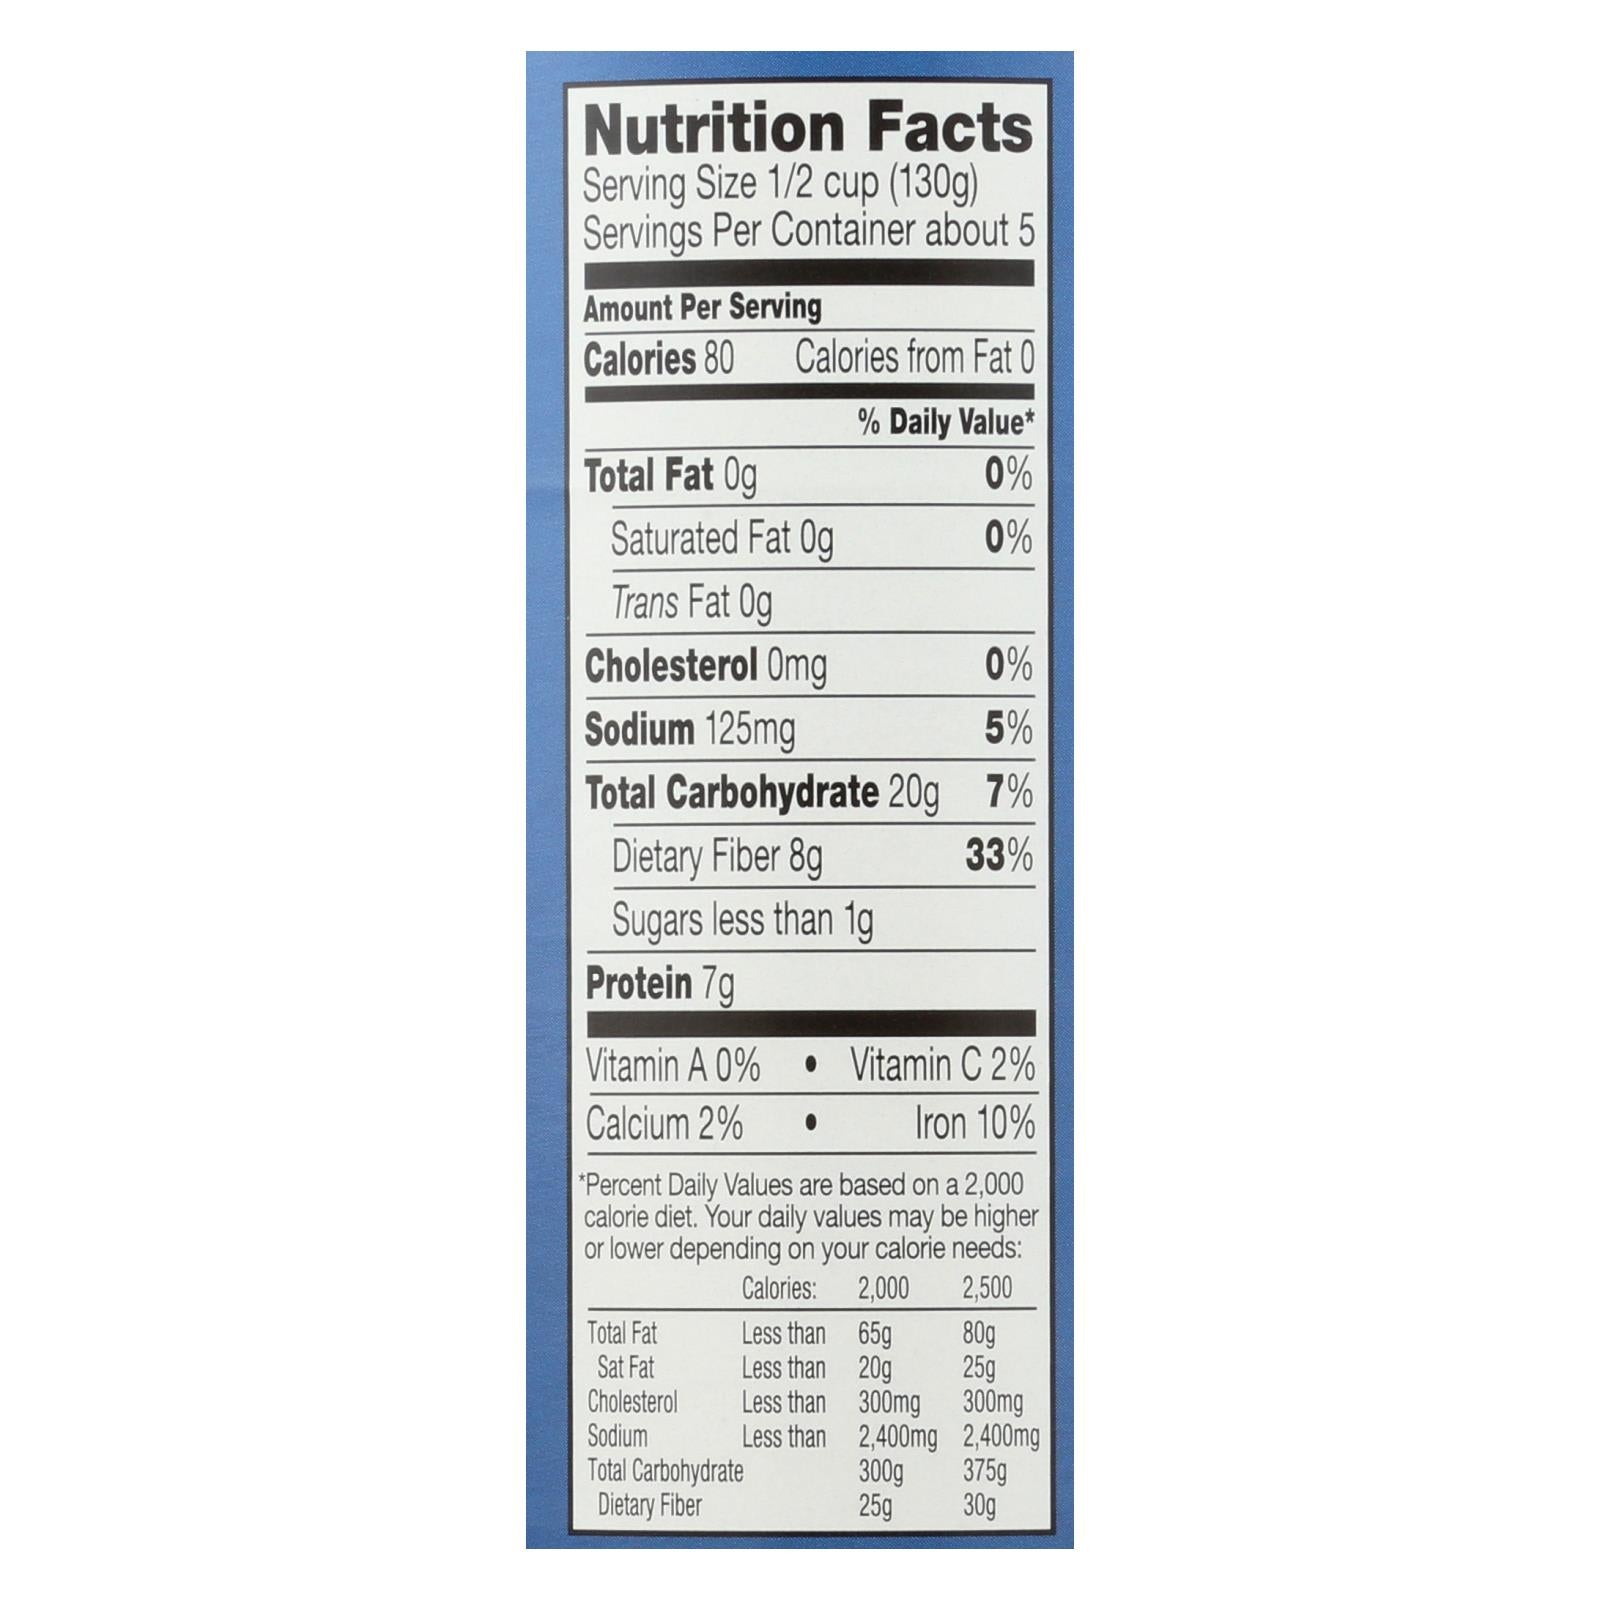 Westbrae Foods Organic Kidney Beans - Case Of 12 - 25 Oz.